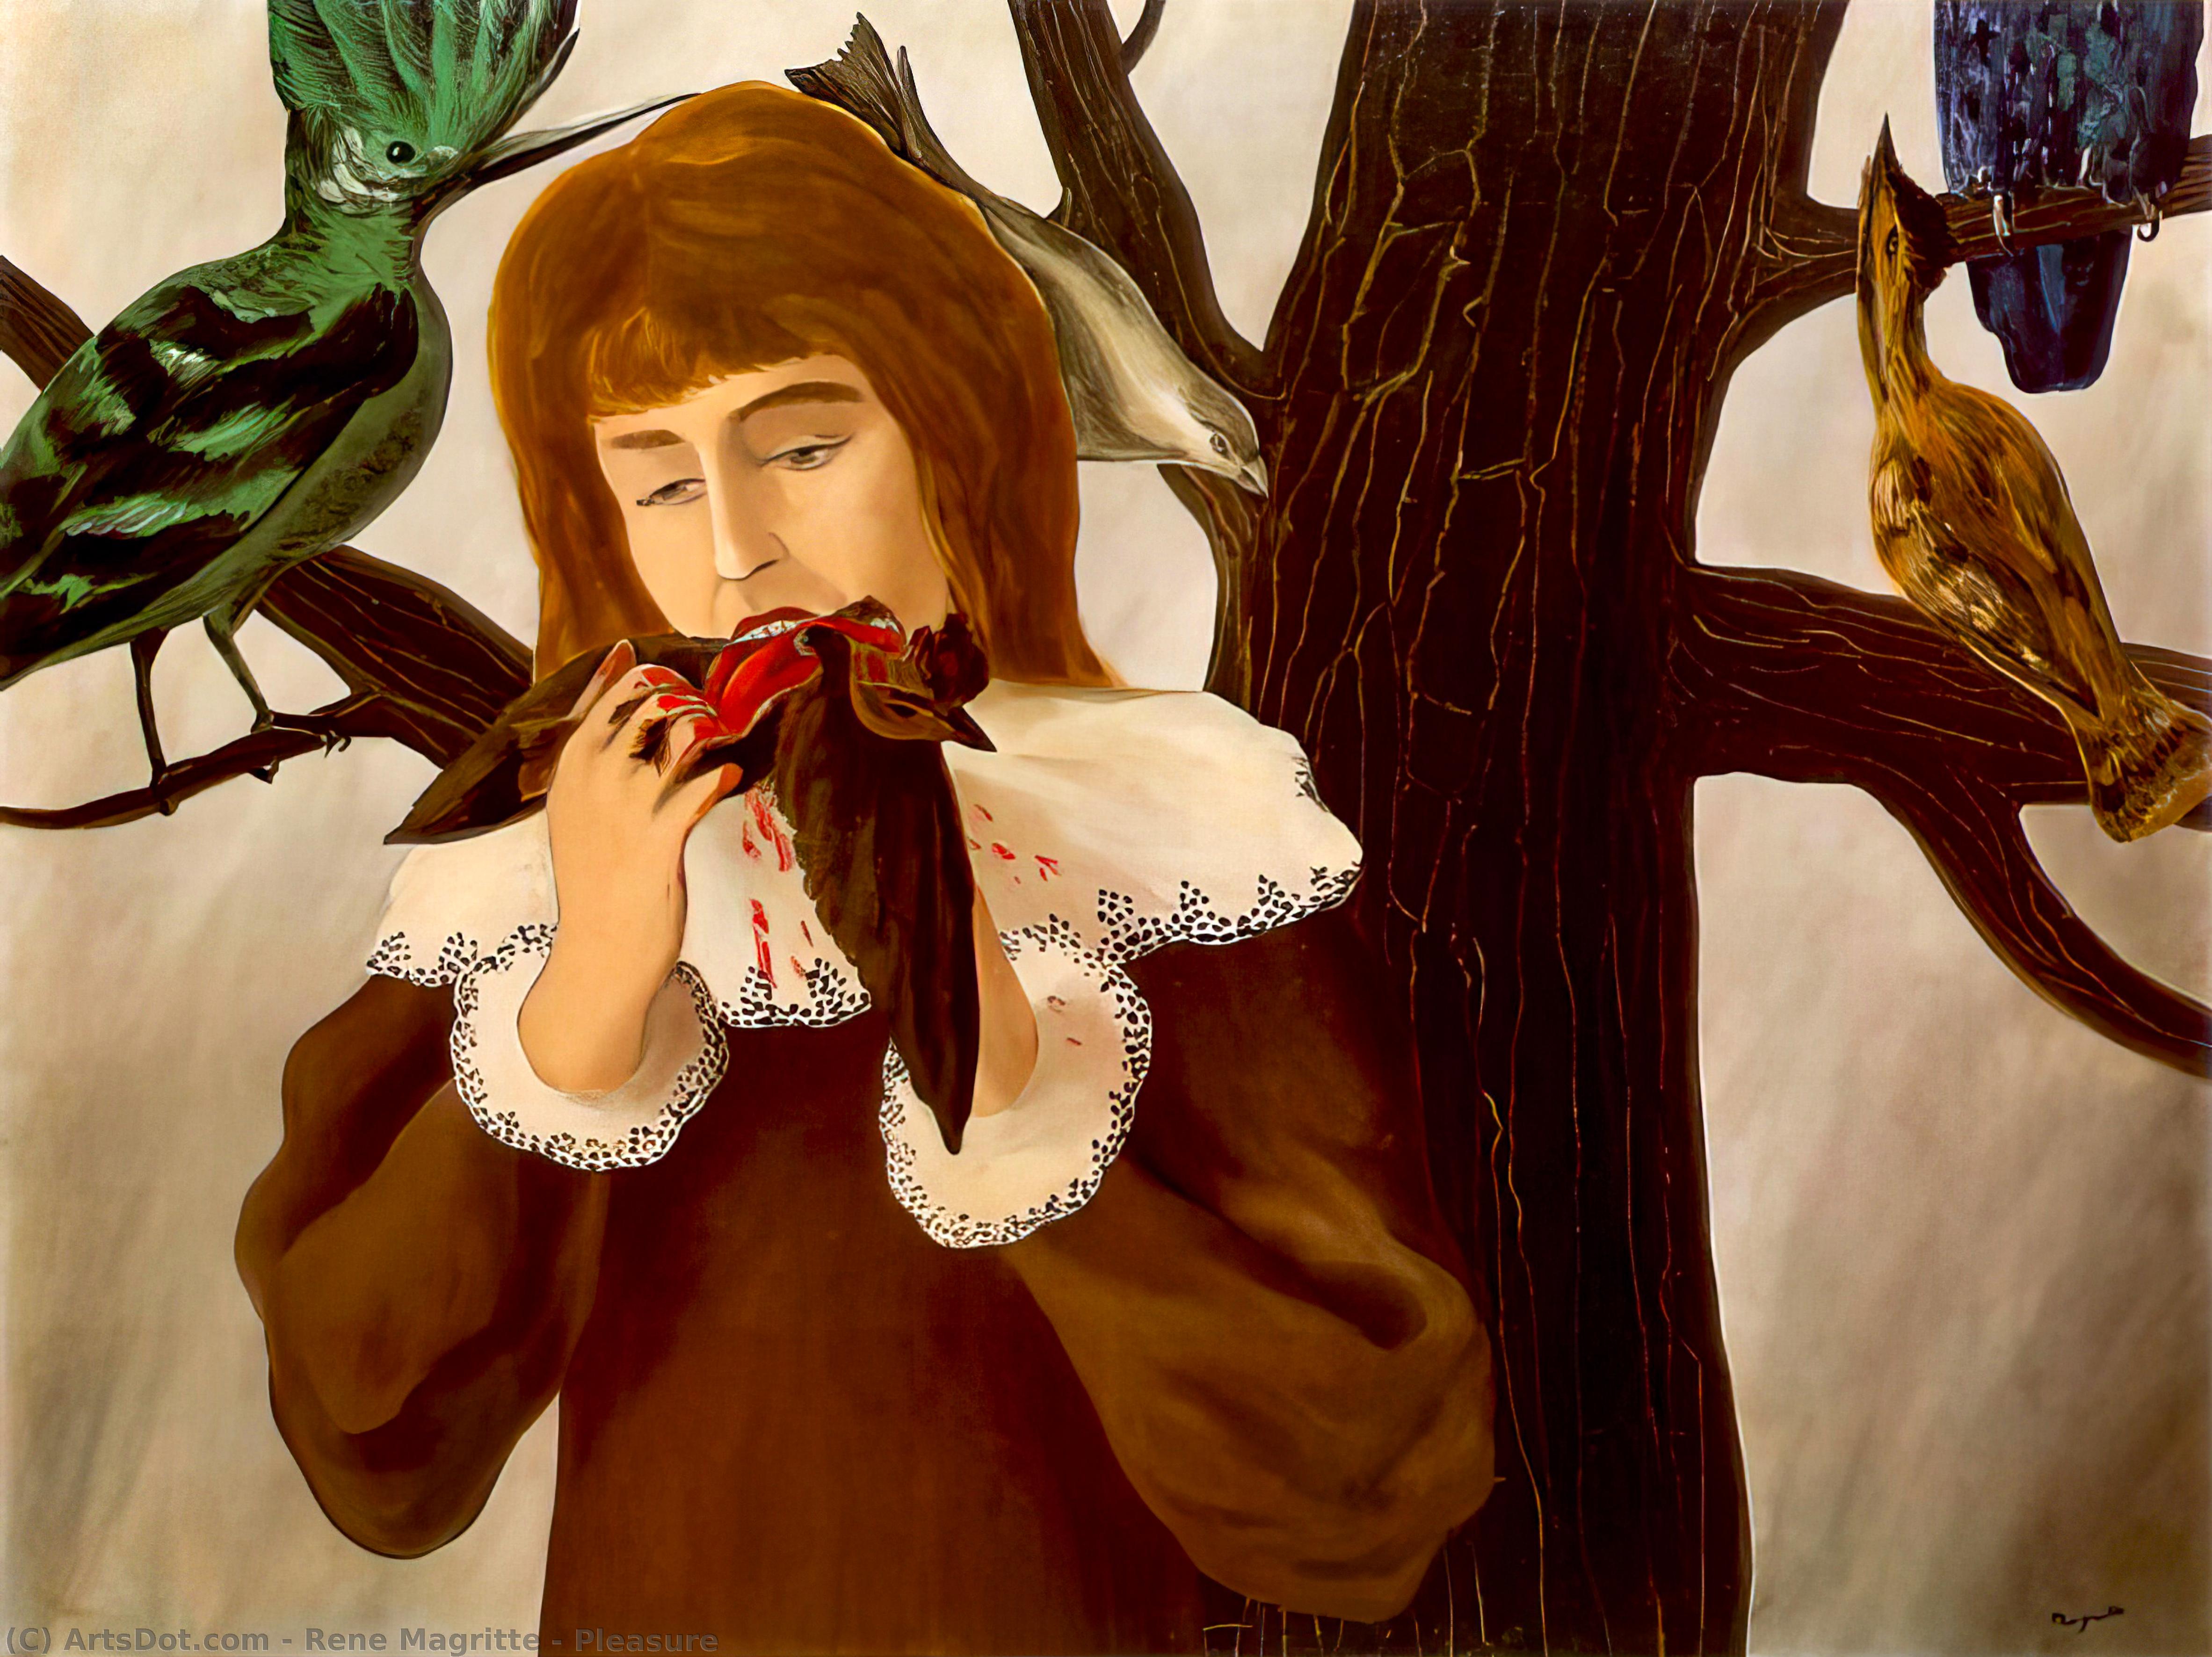 Wikioo.org - Bách khoa toàn thư về mỹ thuật - Vẽ tranh, Tác phẩm nghệ thuật Rene Magritte - Pleasure